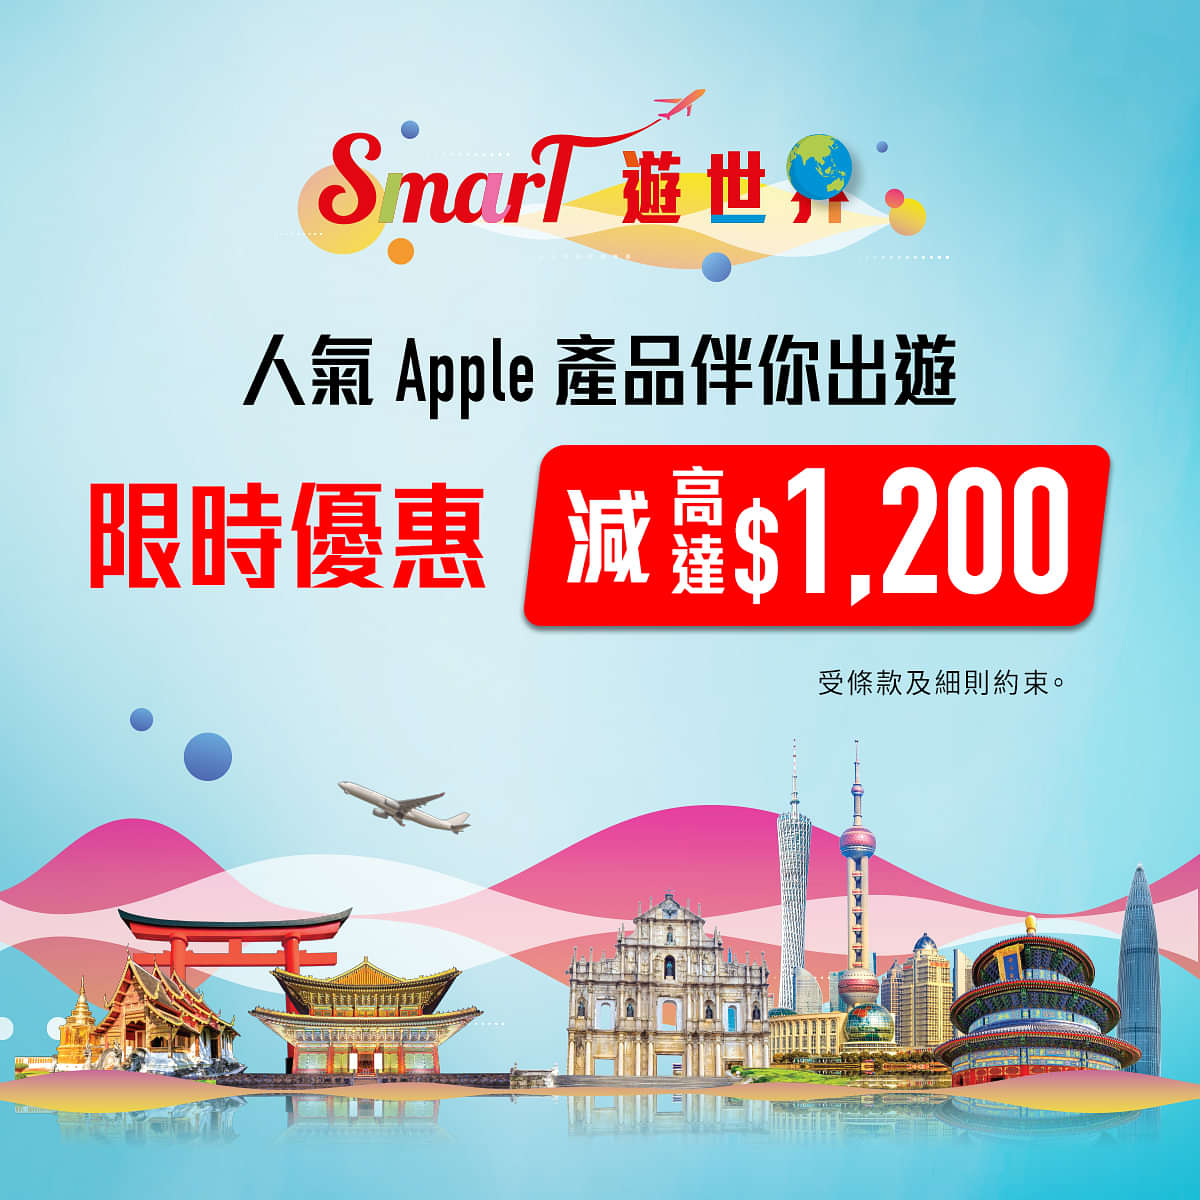 Smartone 數碼通 SMT 寬頻/5G優惠： Apple 產品高達$1200優惠